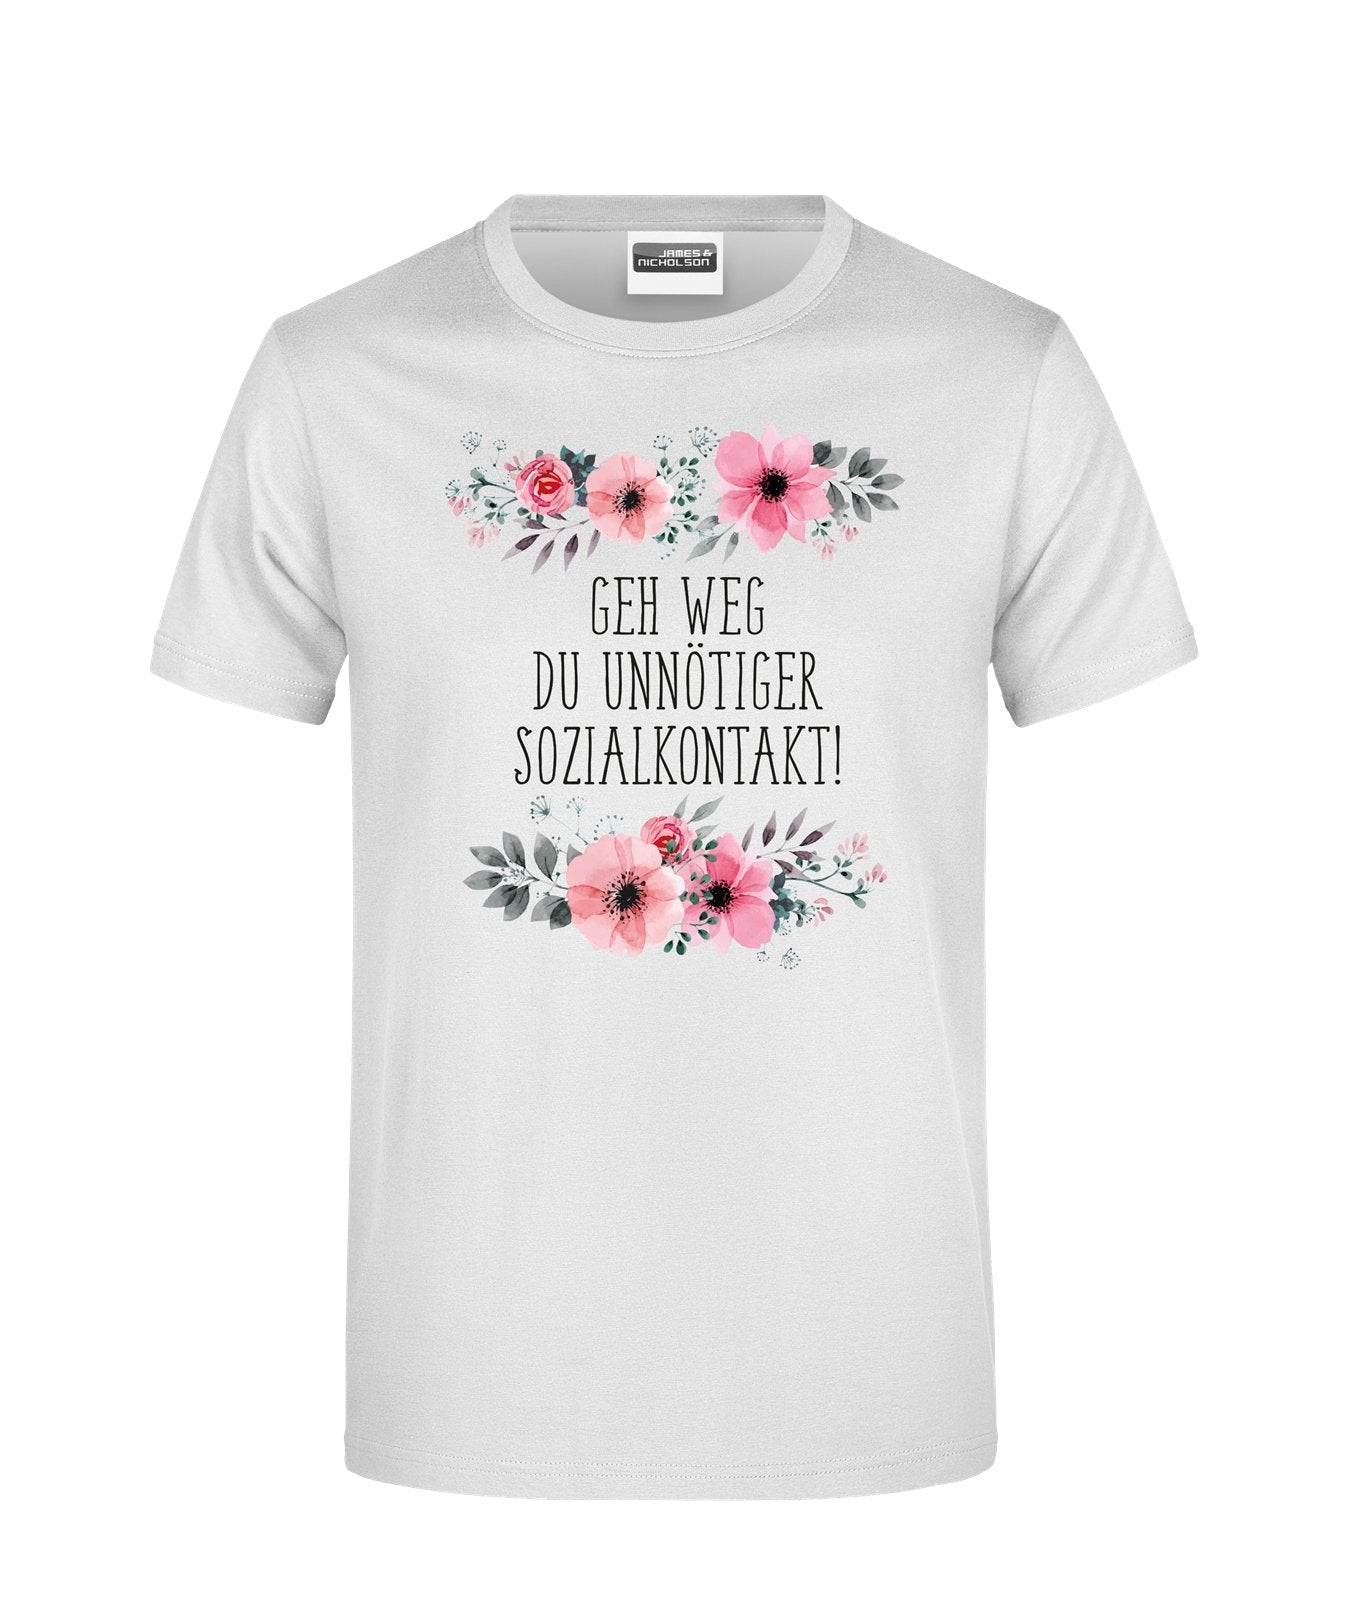 Bild: T-Shirt - Geh weg Du unnötiger Sozialkontakt - blumig Geschenkidee